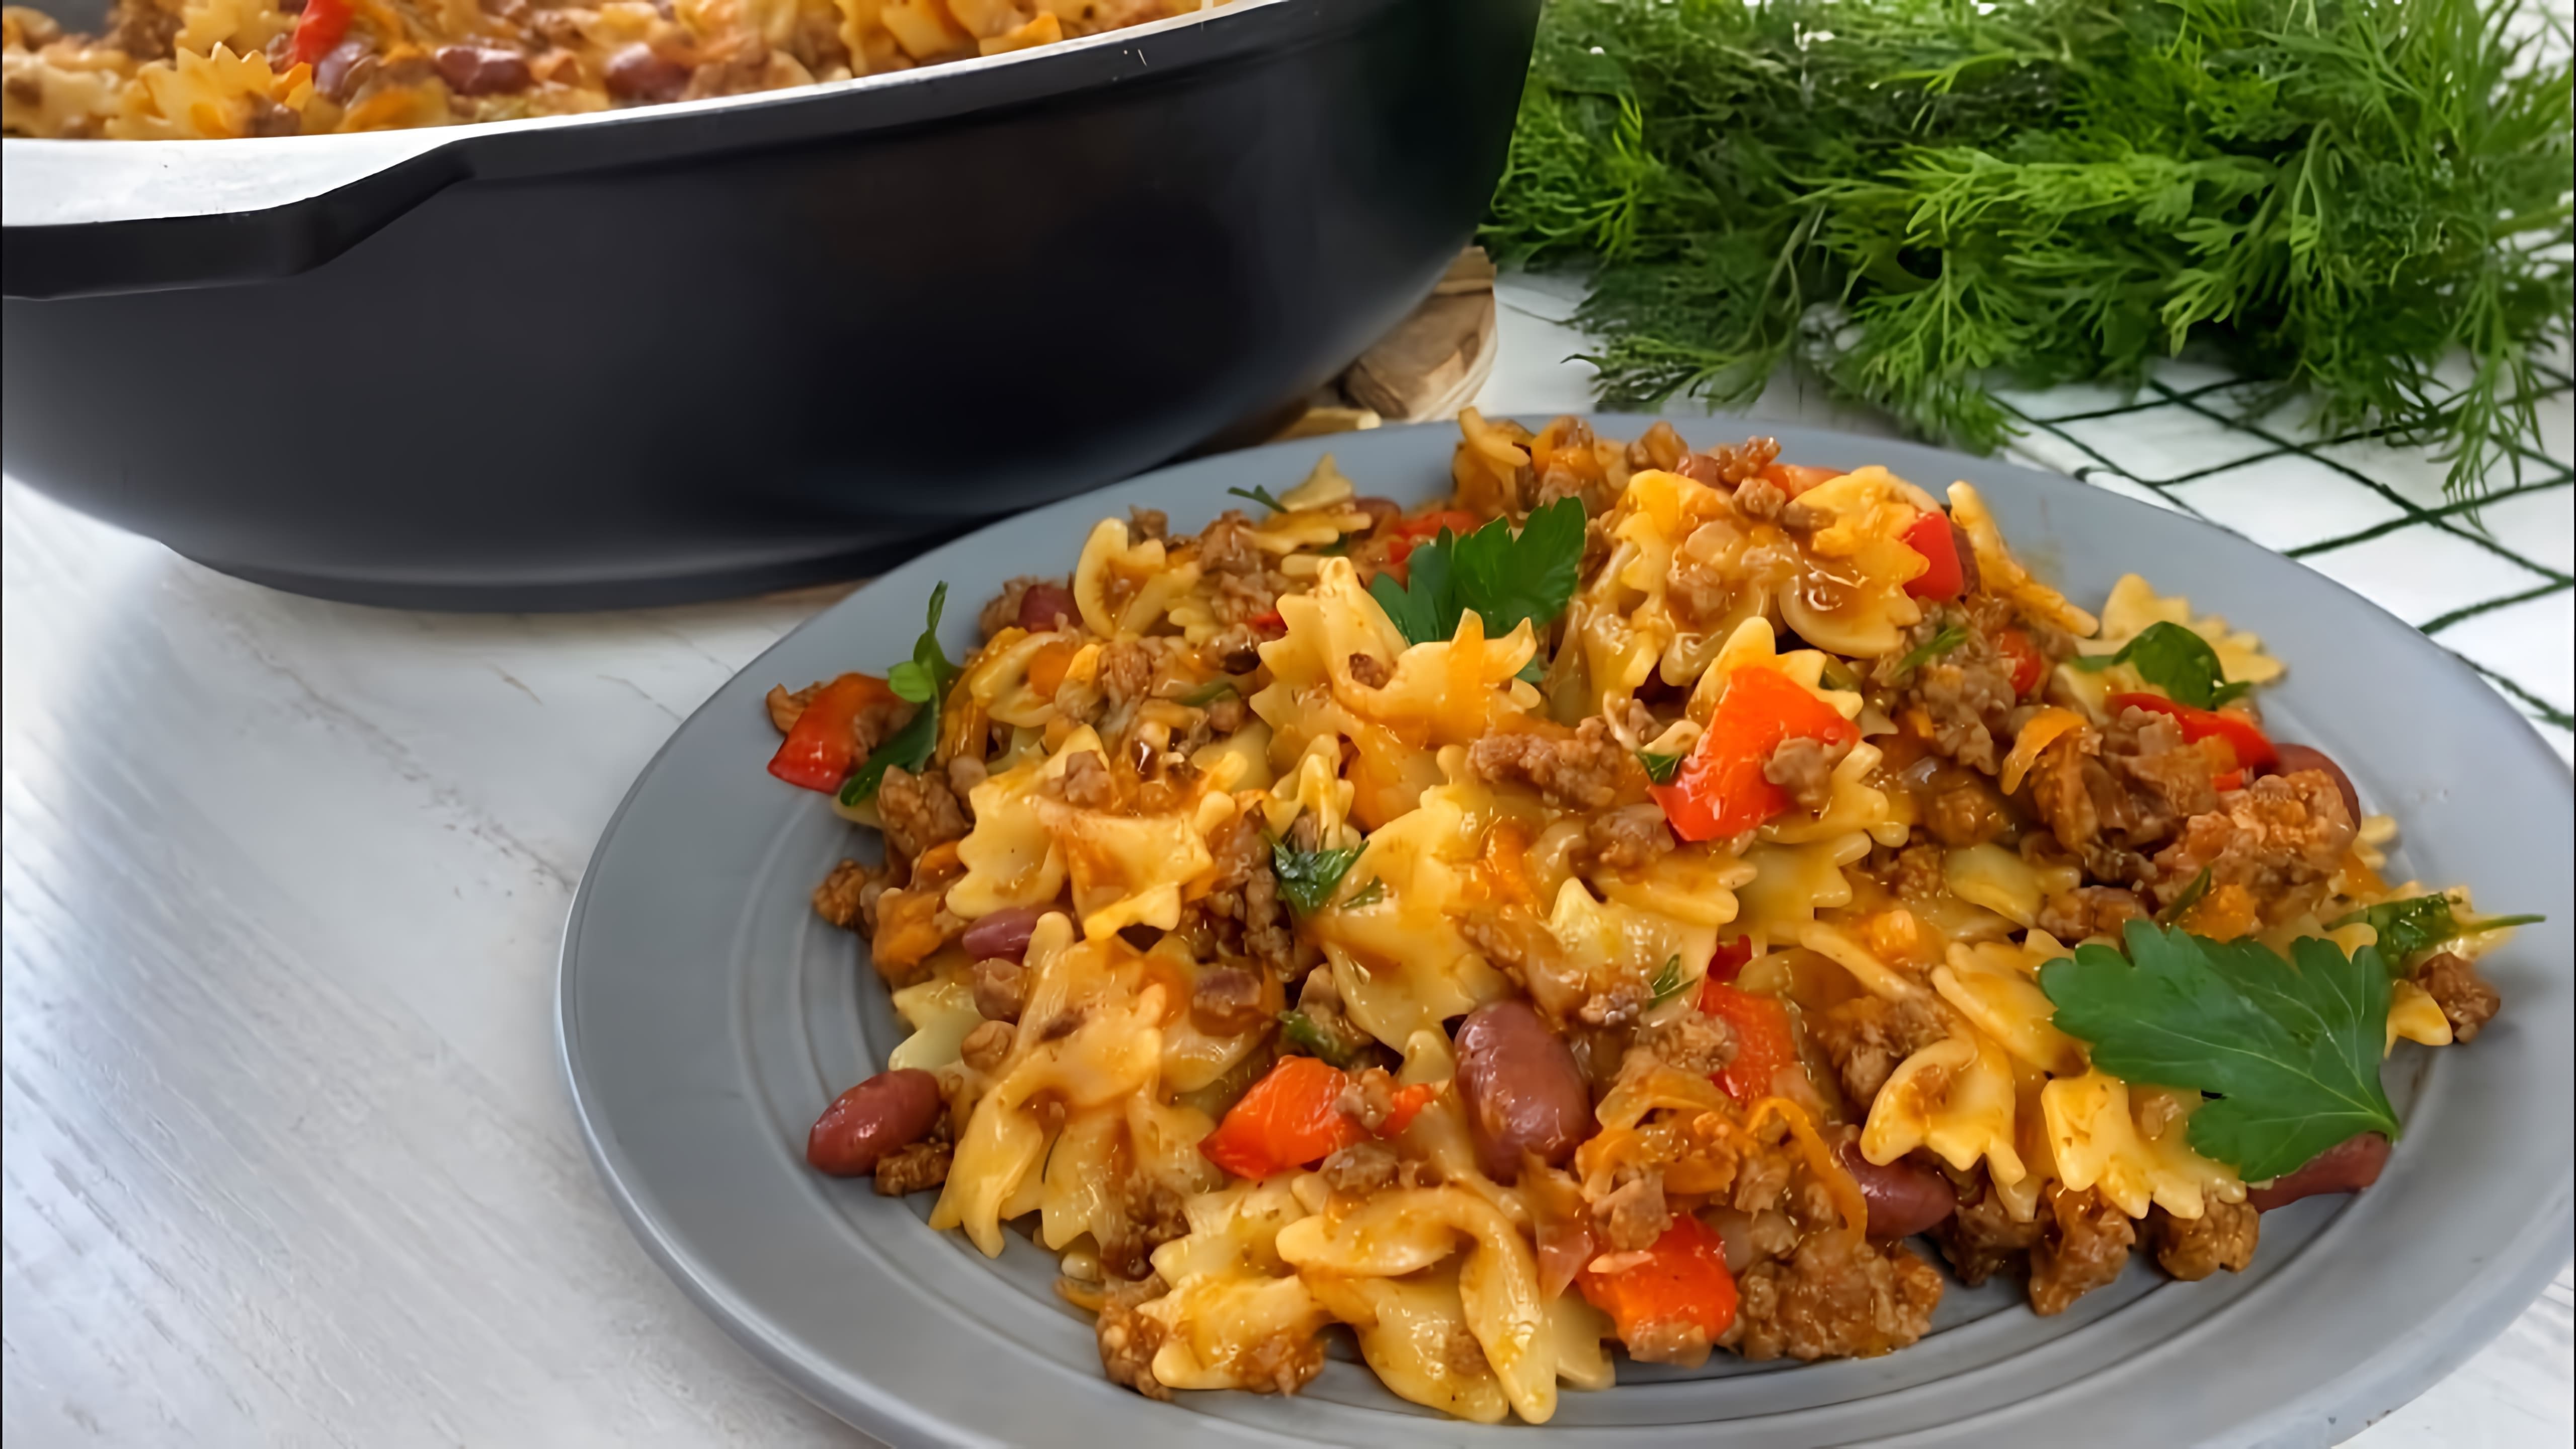 В этом видео демонстрируется быстрый и простой рецепт приготовления ужина из макарон с фаршем и овощами